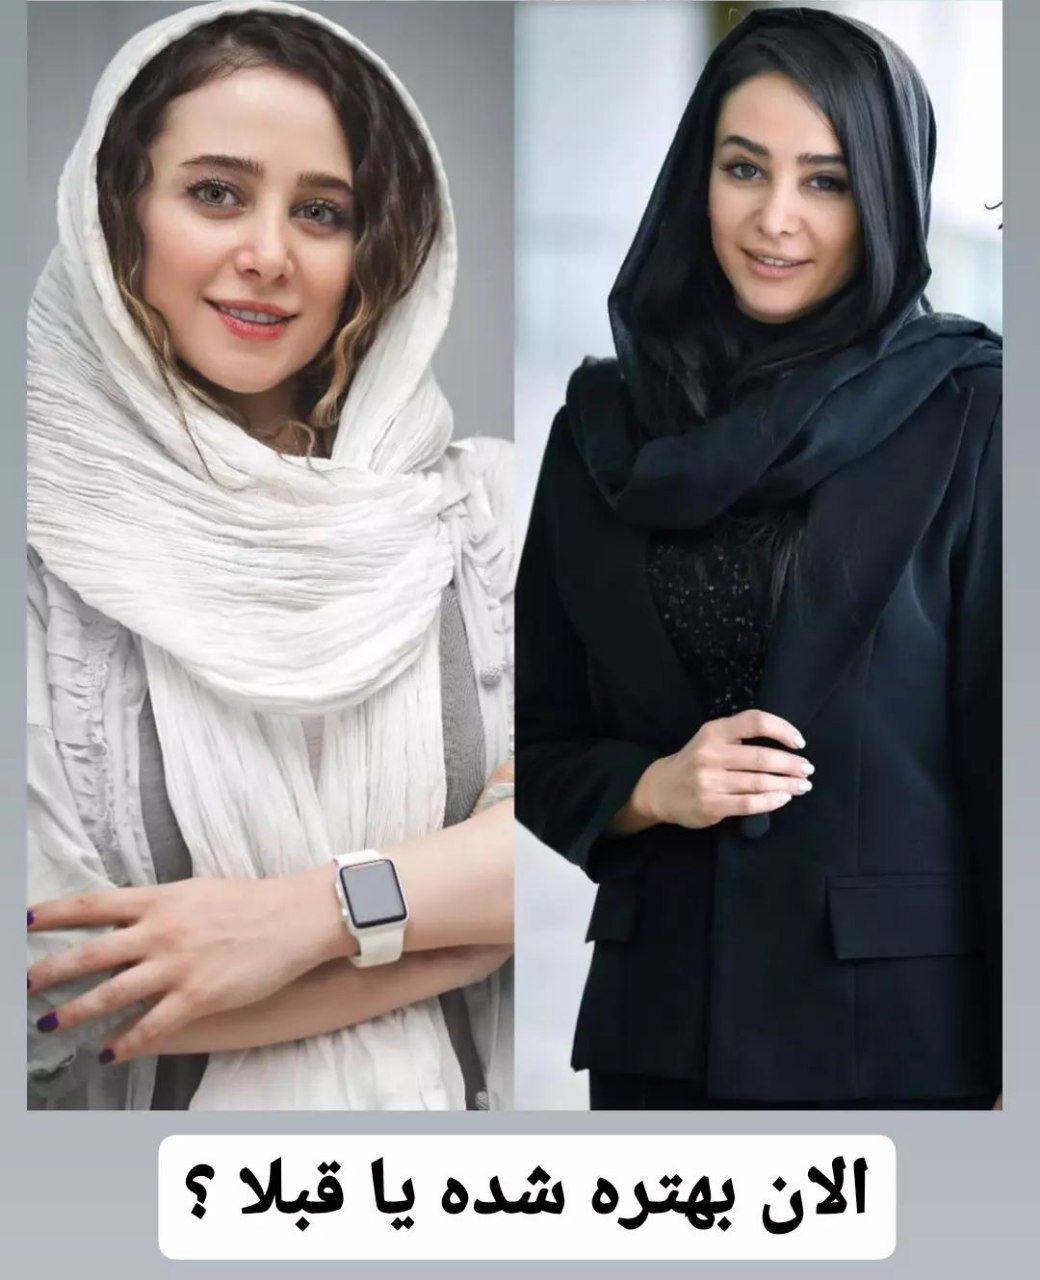 چهره جدید الناز حبیبی بعد از جراحی زیبایی / تغییرات خانم بازیگر در گذر زمان + عکس